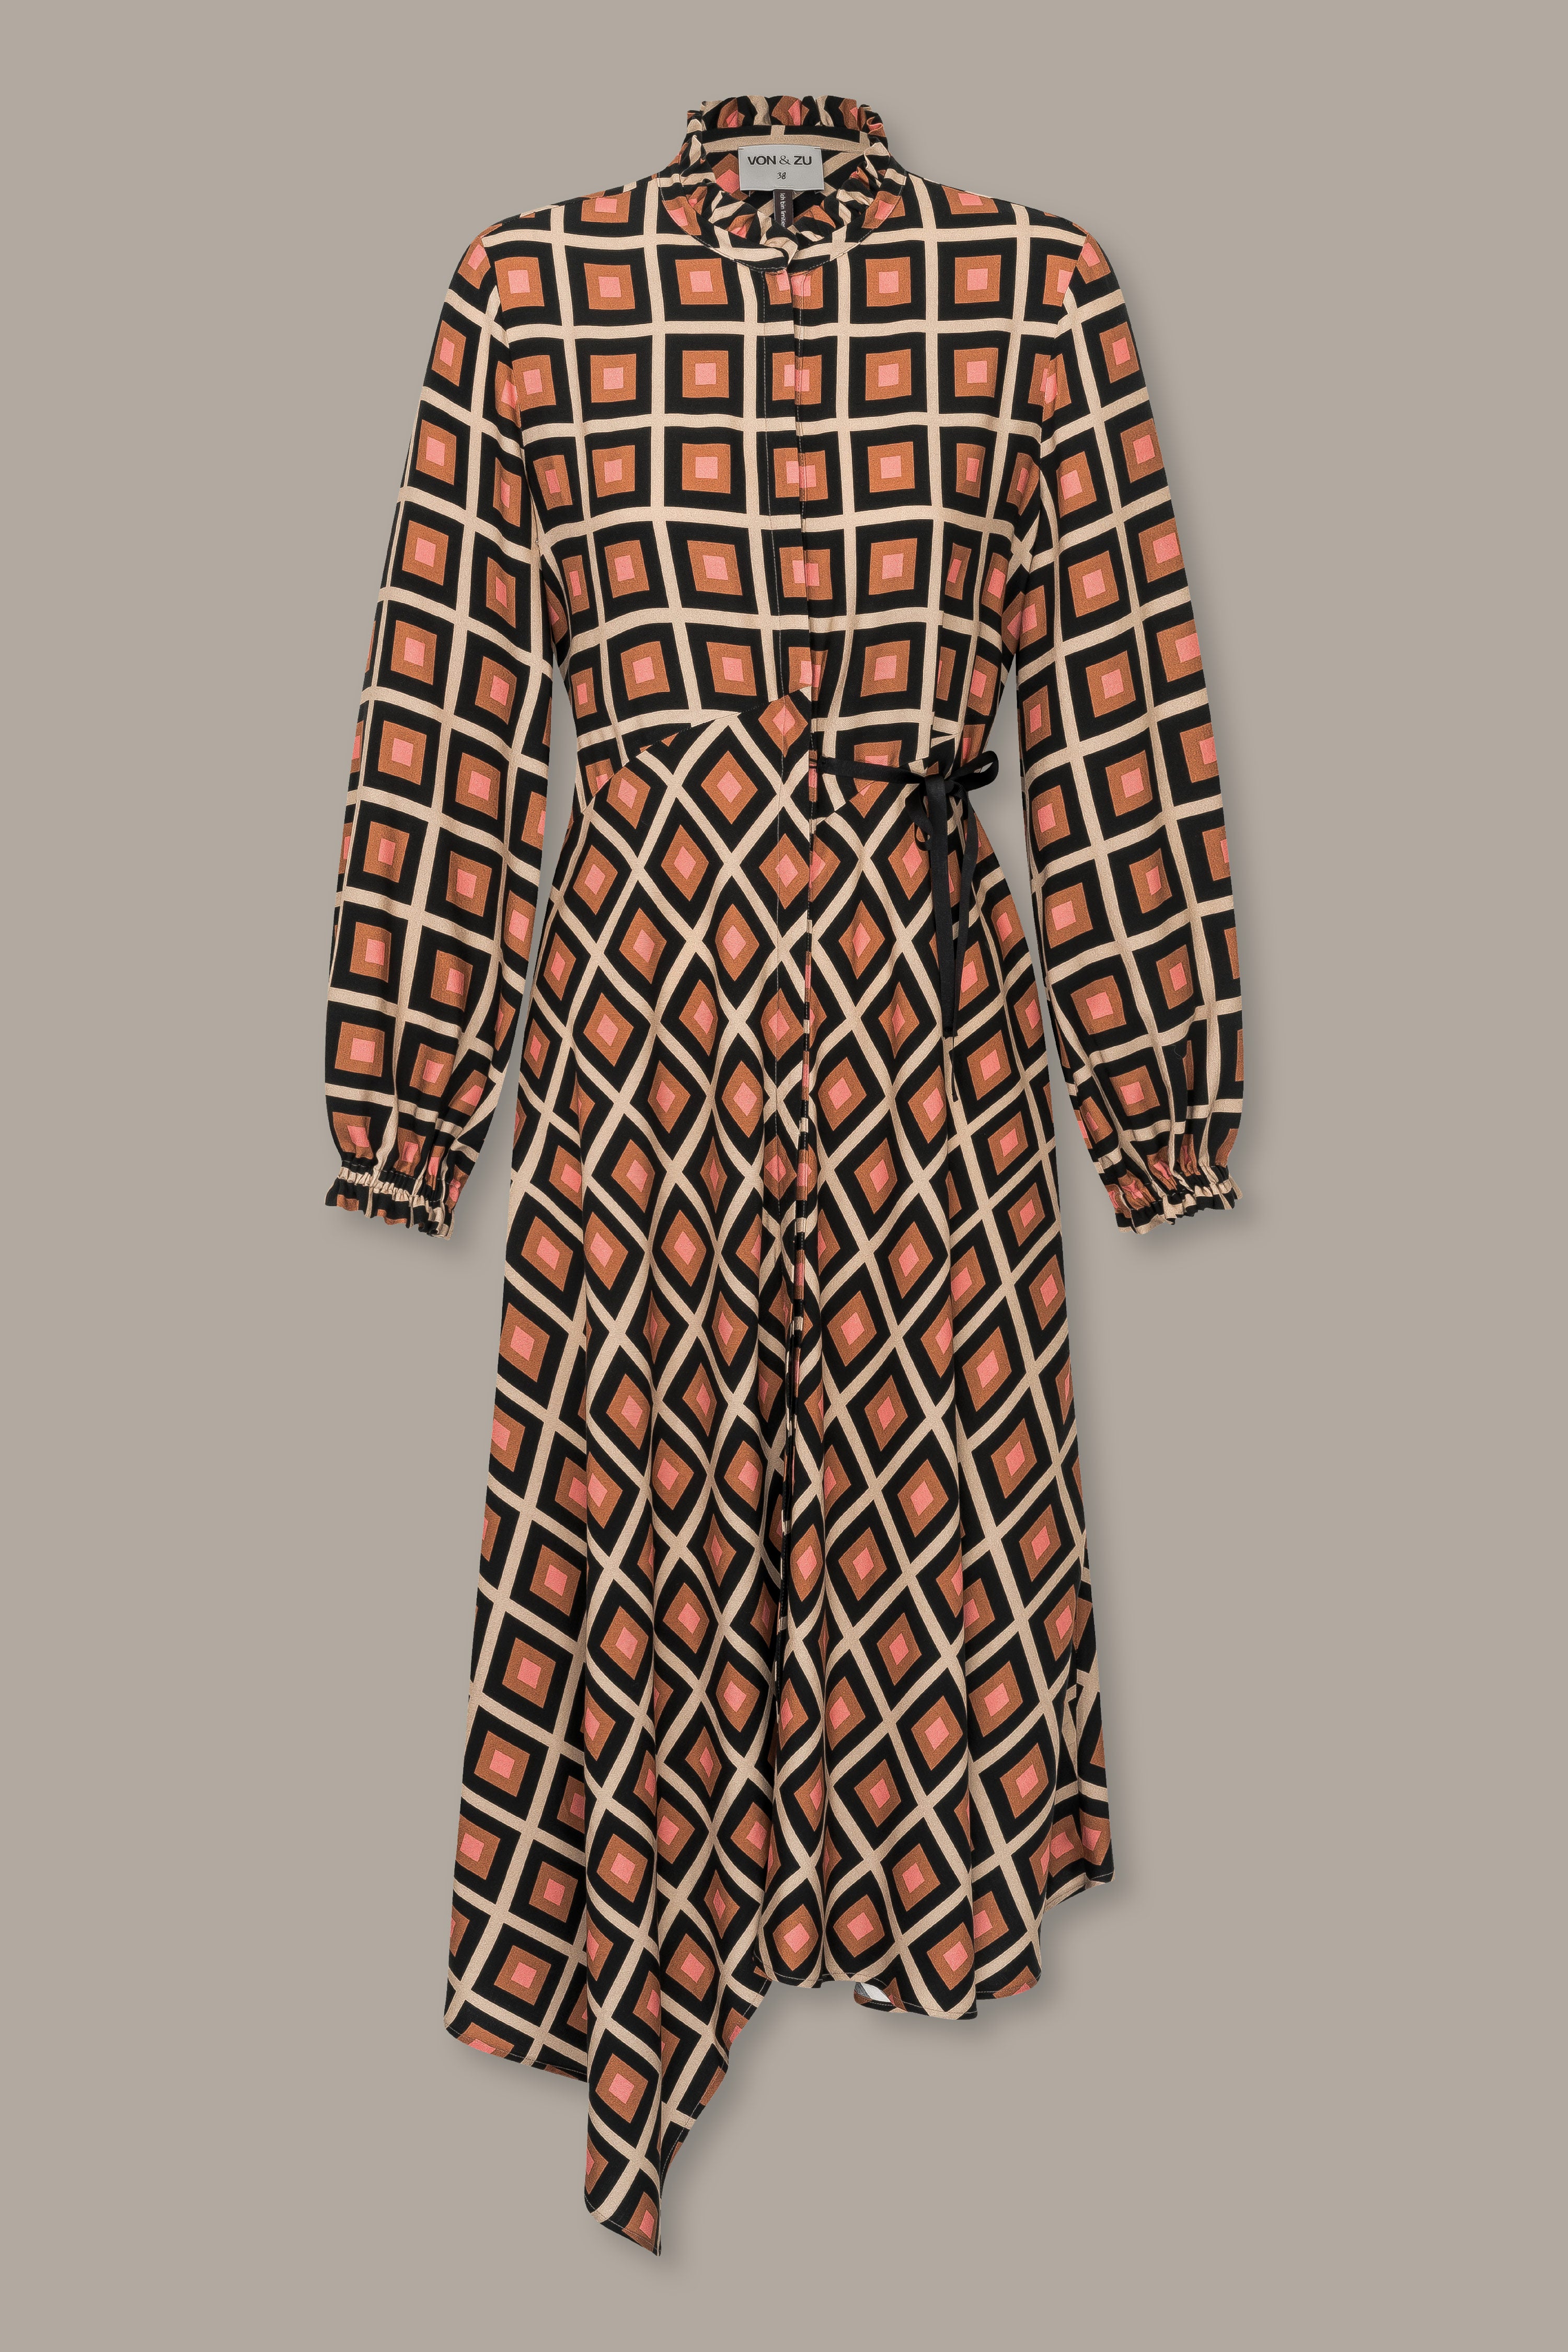 Asymmetrical check print dress